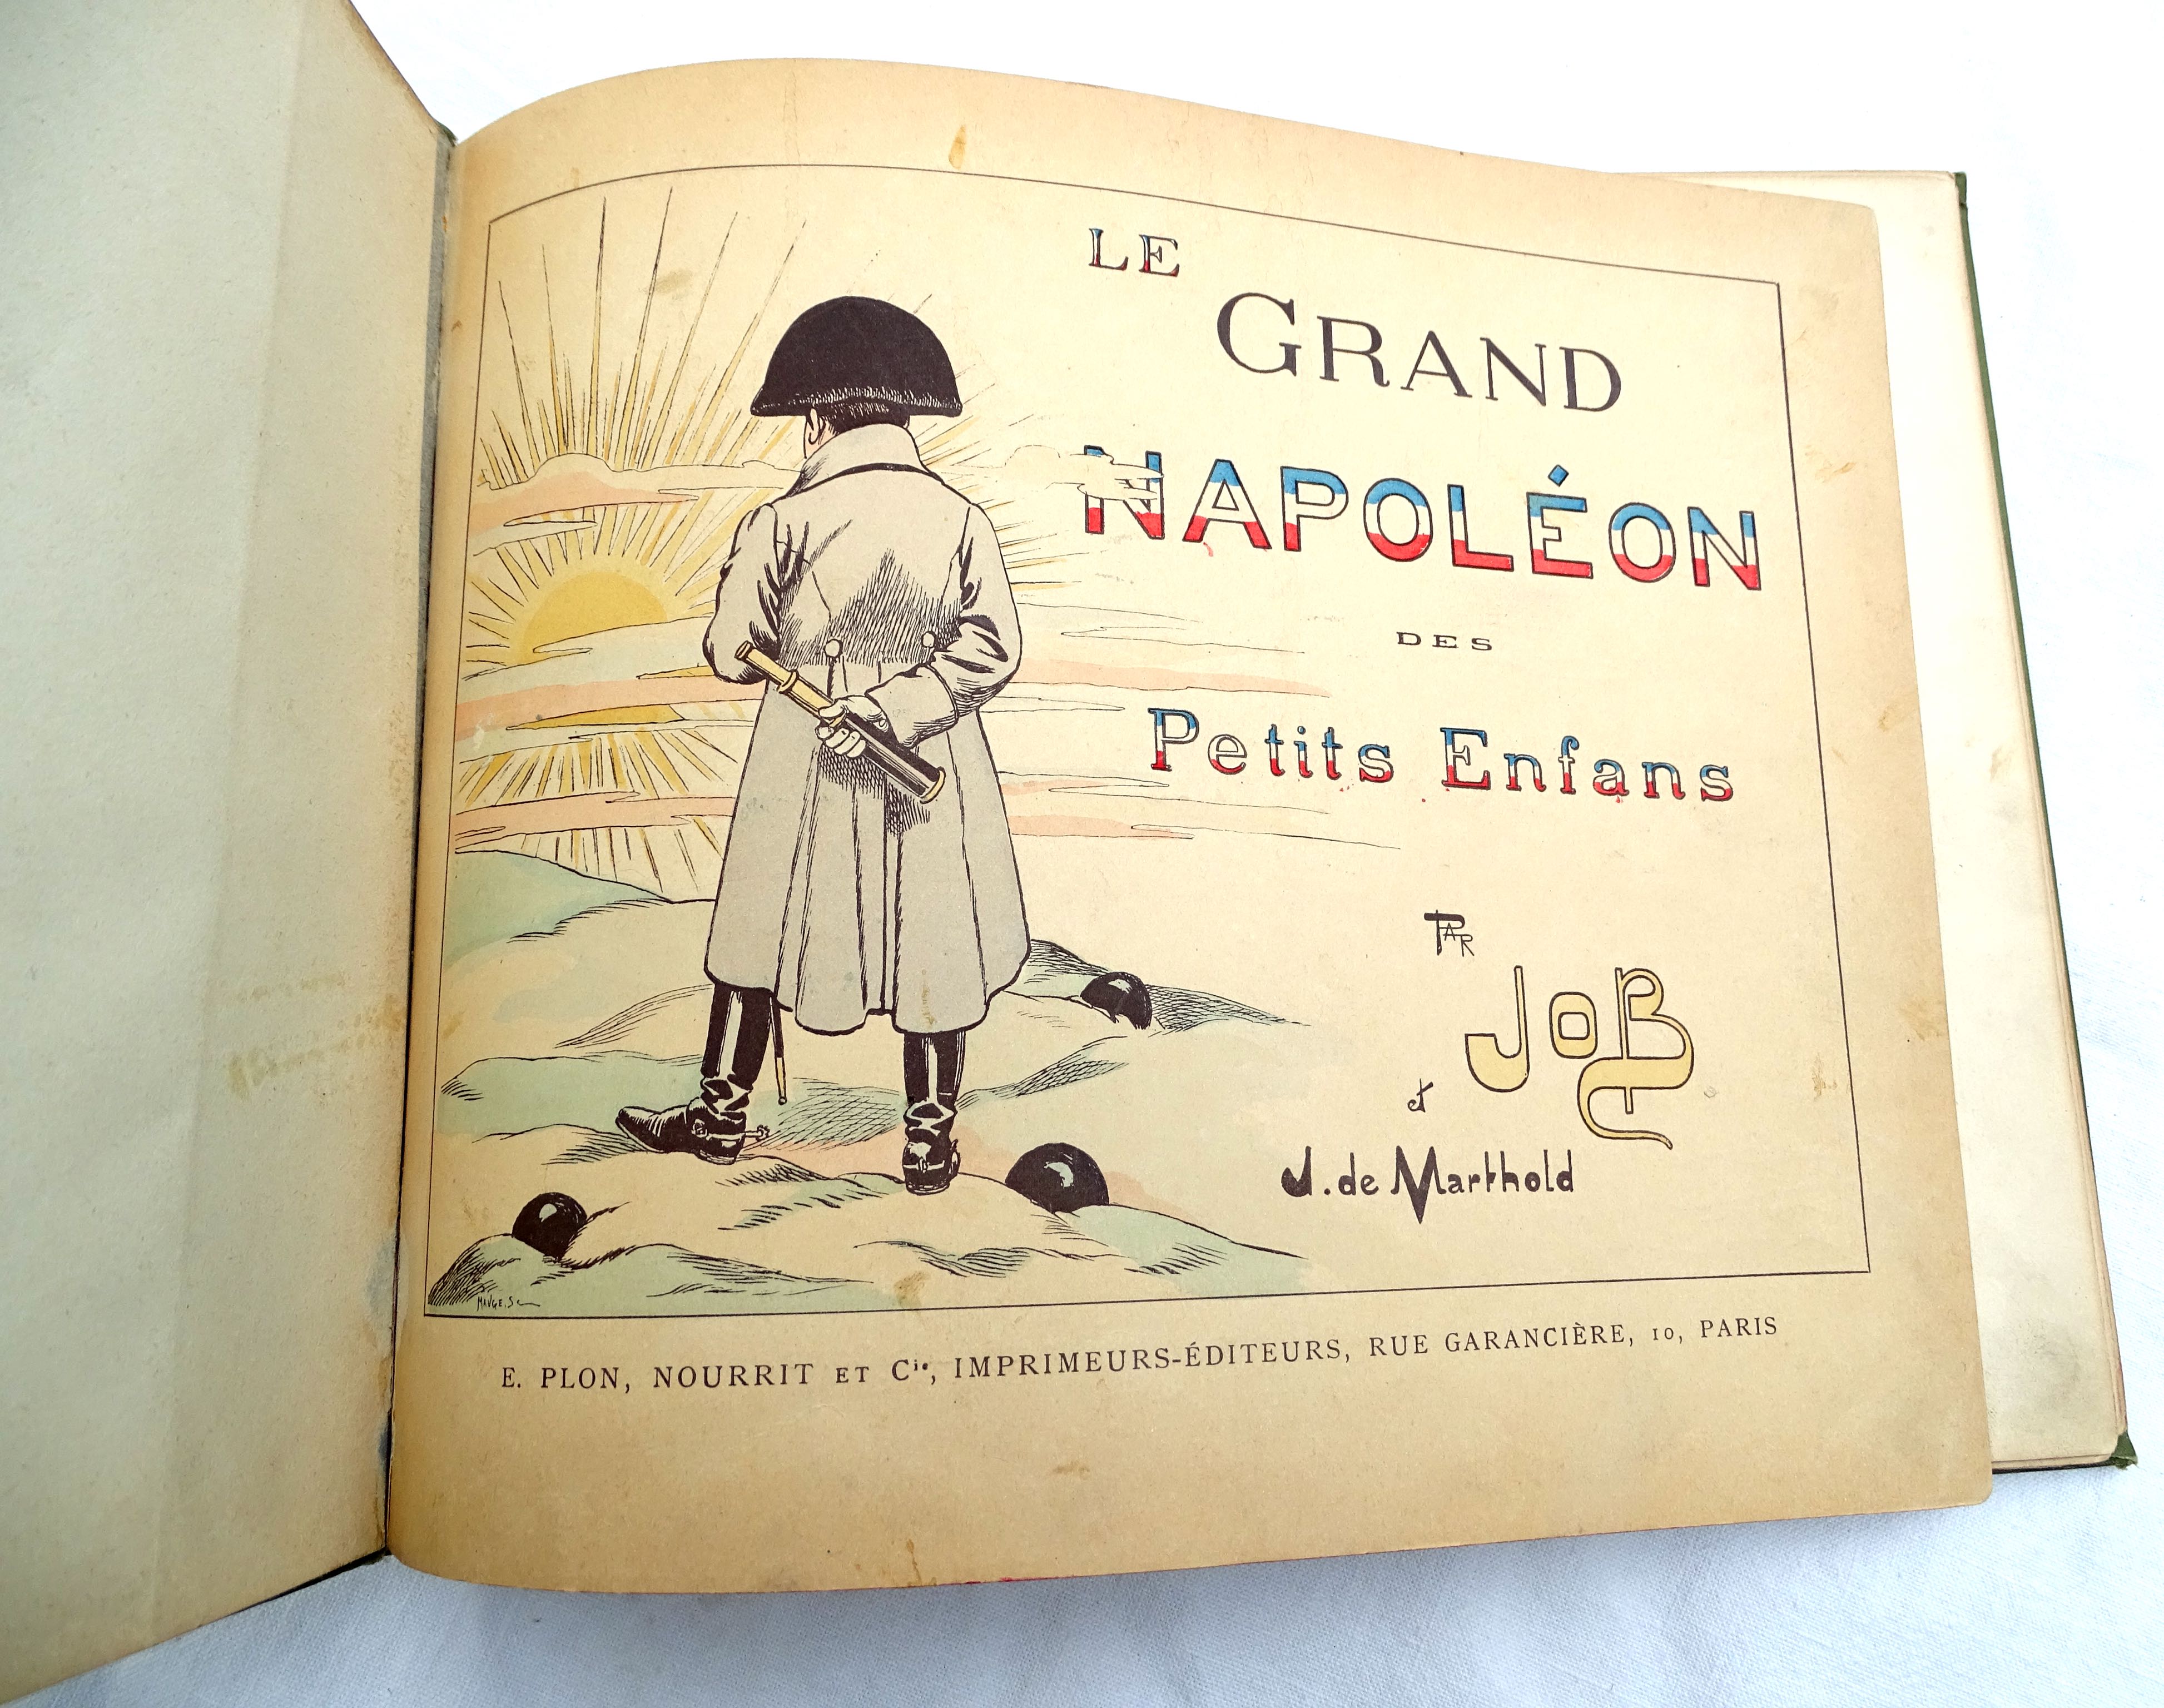 Le Grand Napol&eacute;on des petits enfans J.de Marthold, illustrations de Job